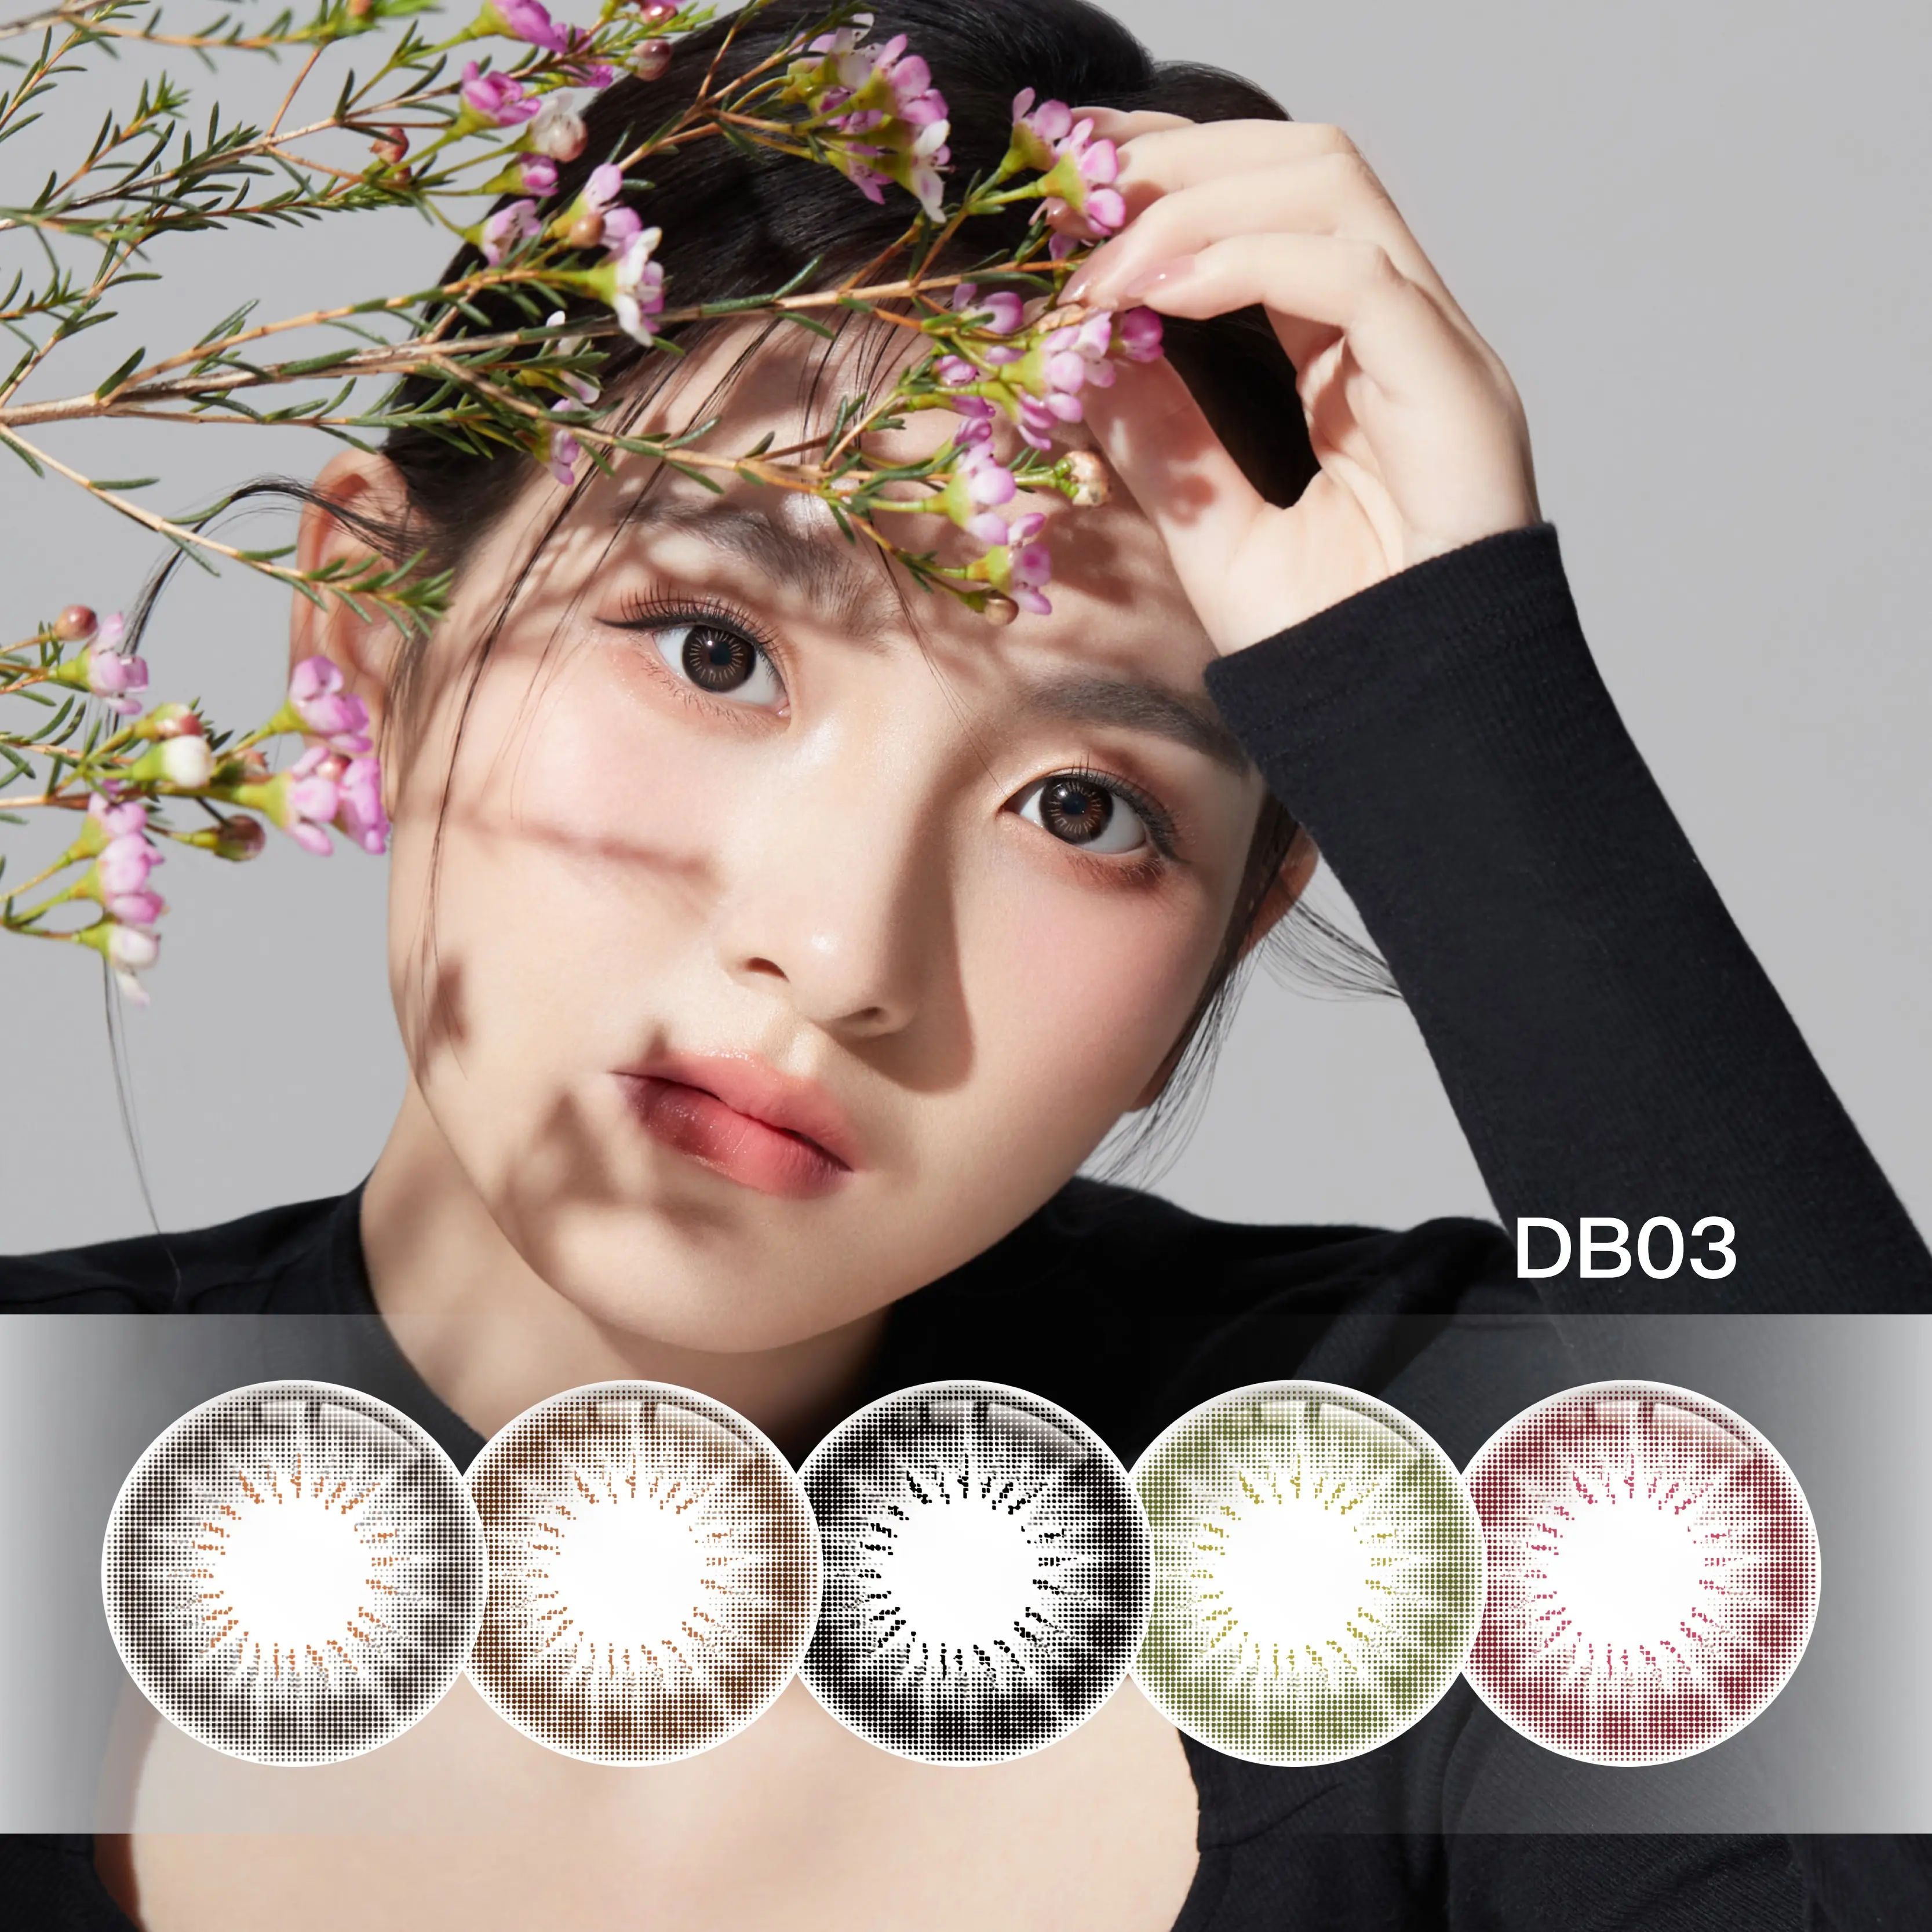 DB03 12 Farbige Schönheits farbe Augenkontakt linsen Kostenlose Probe New Look Hochwertige Kontaktlinsen